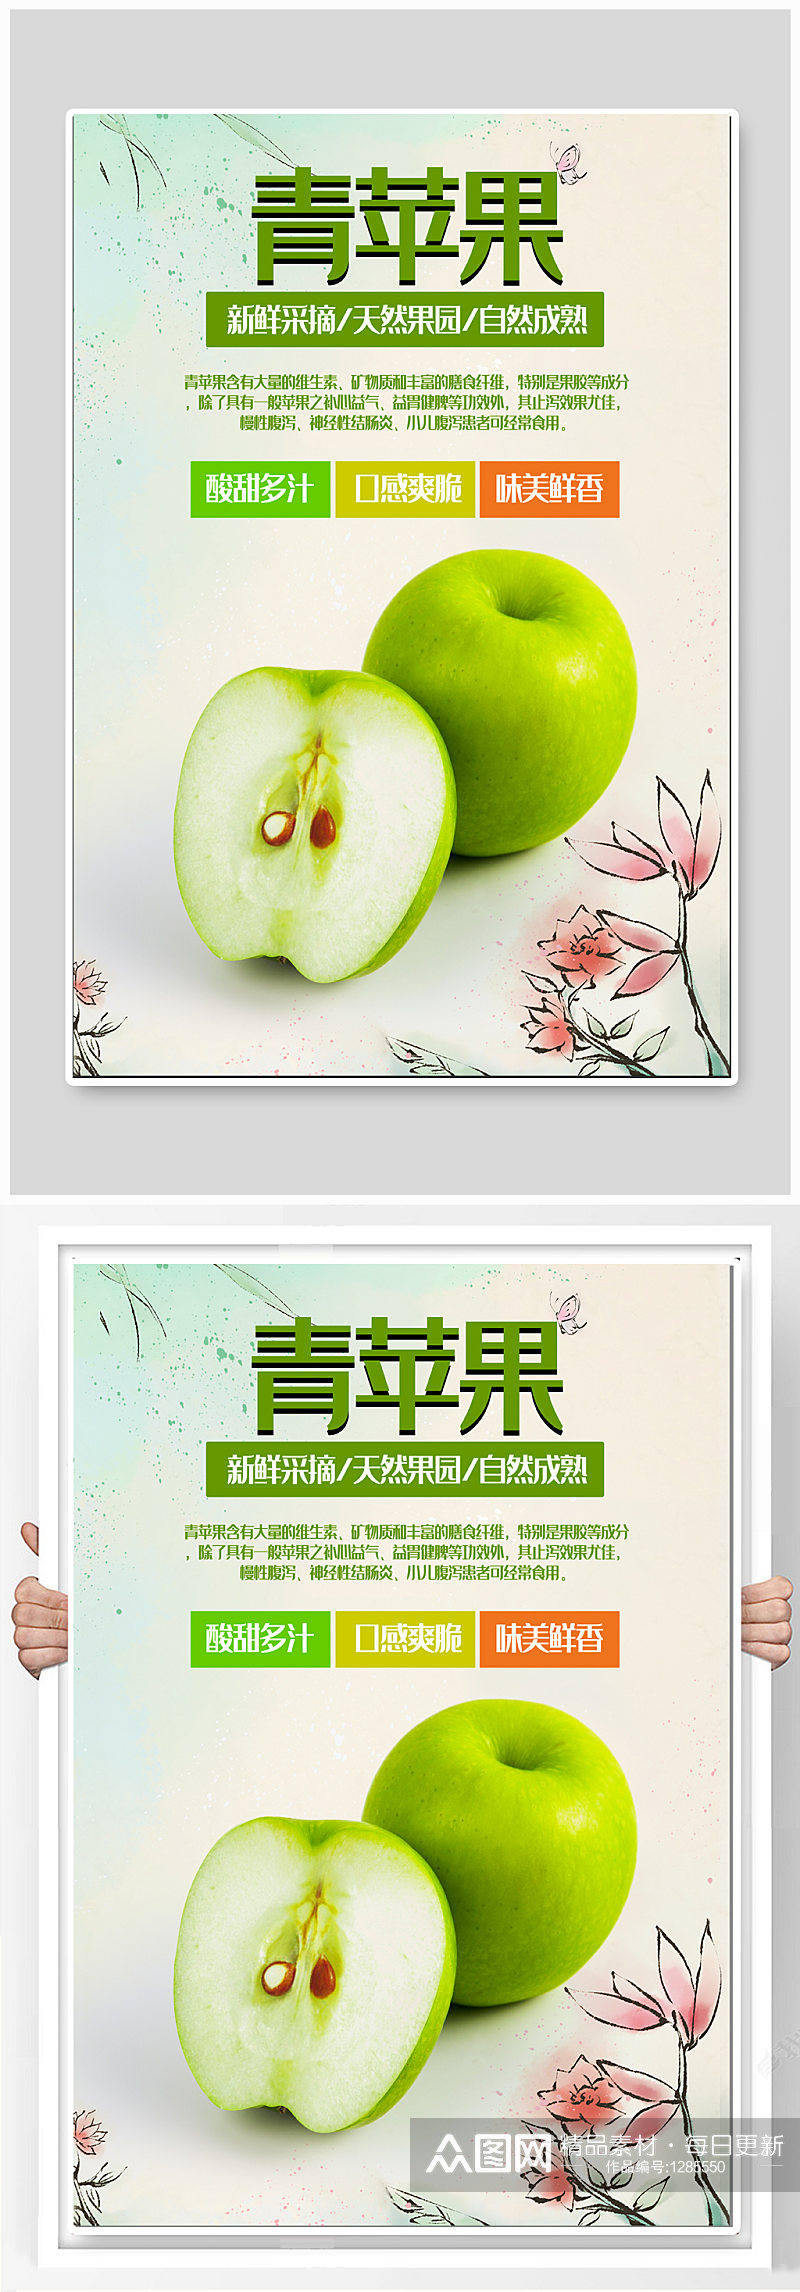 青苹果水果促销海报素材